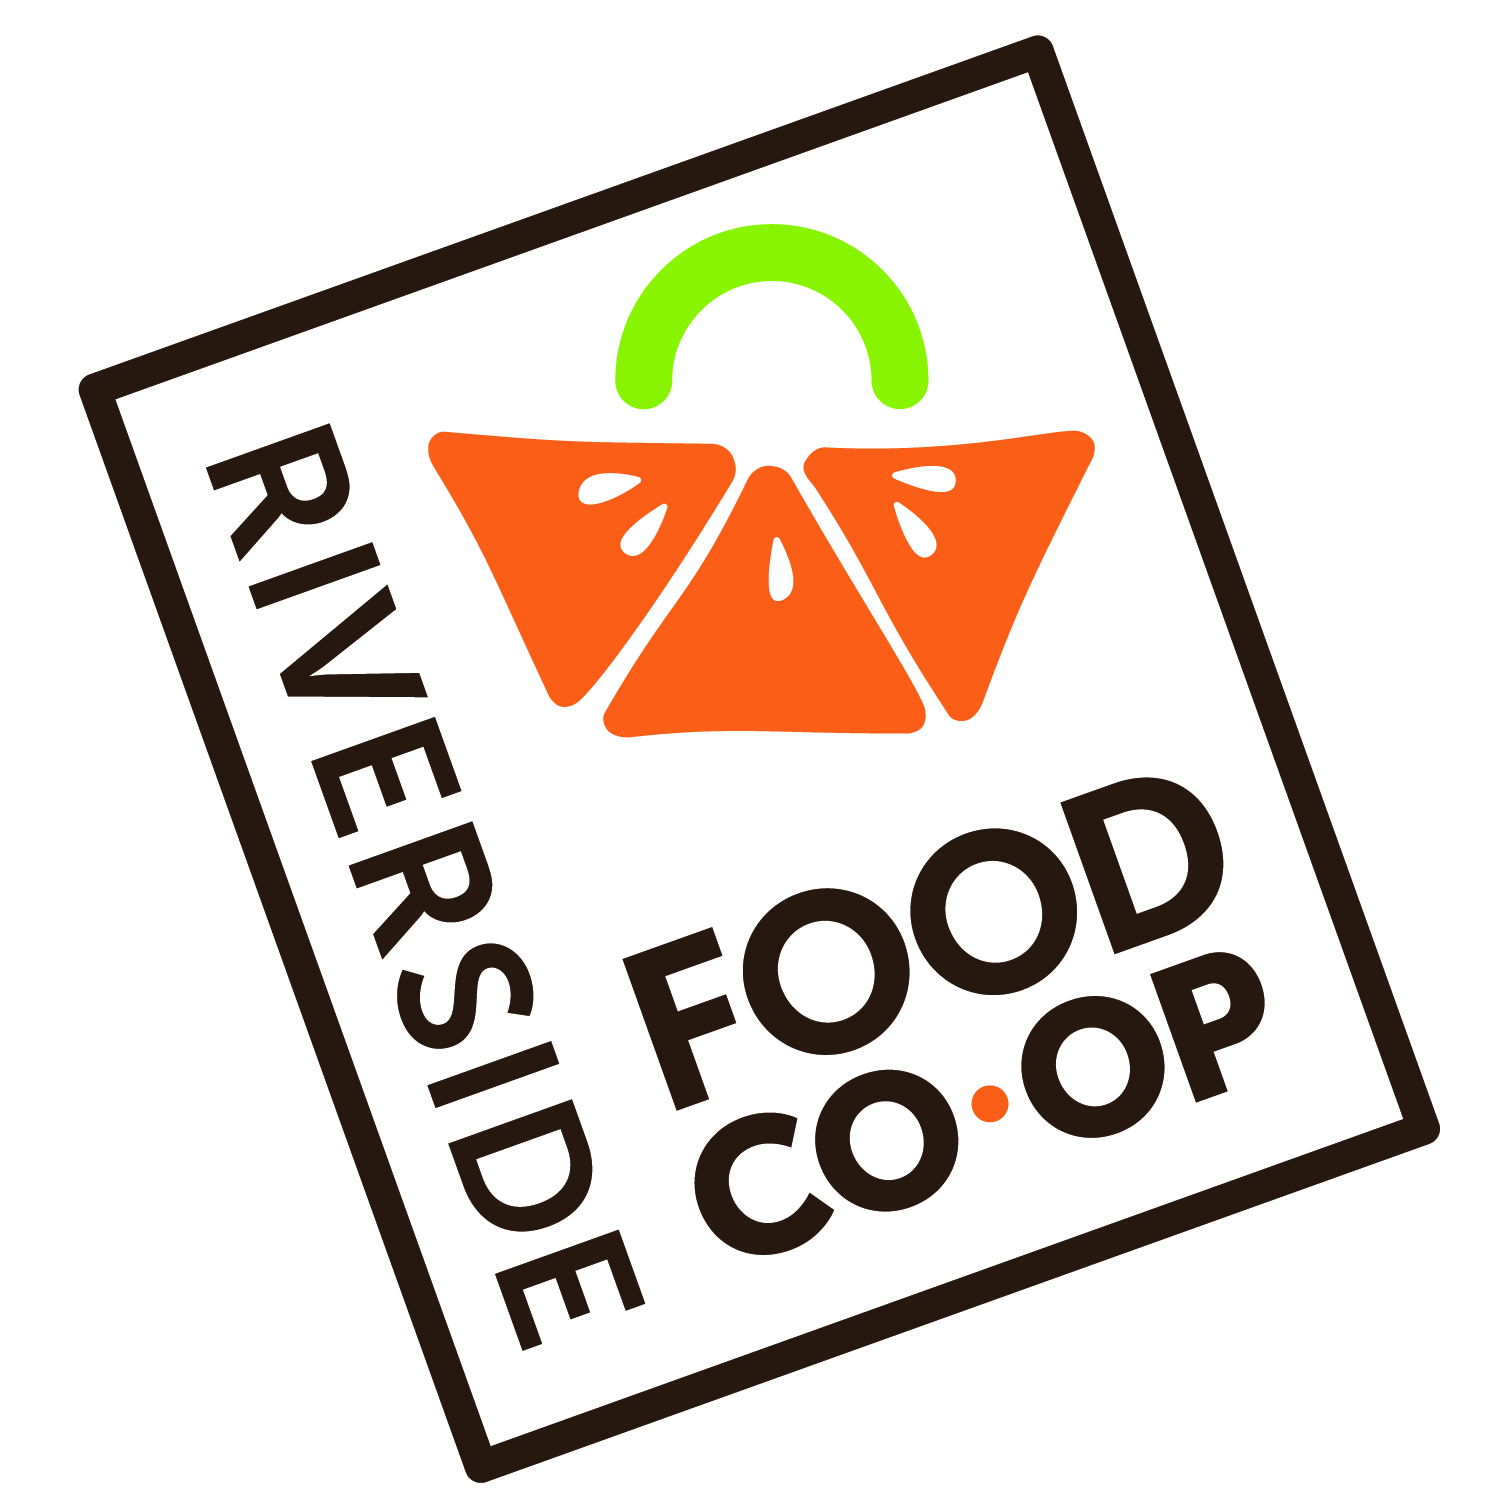 
												Riverside Food Coop